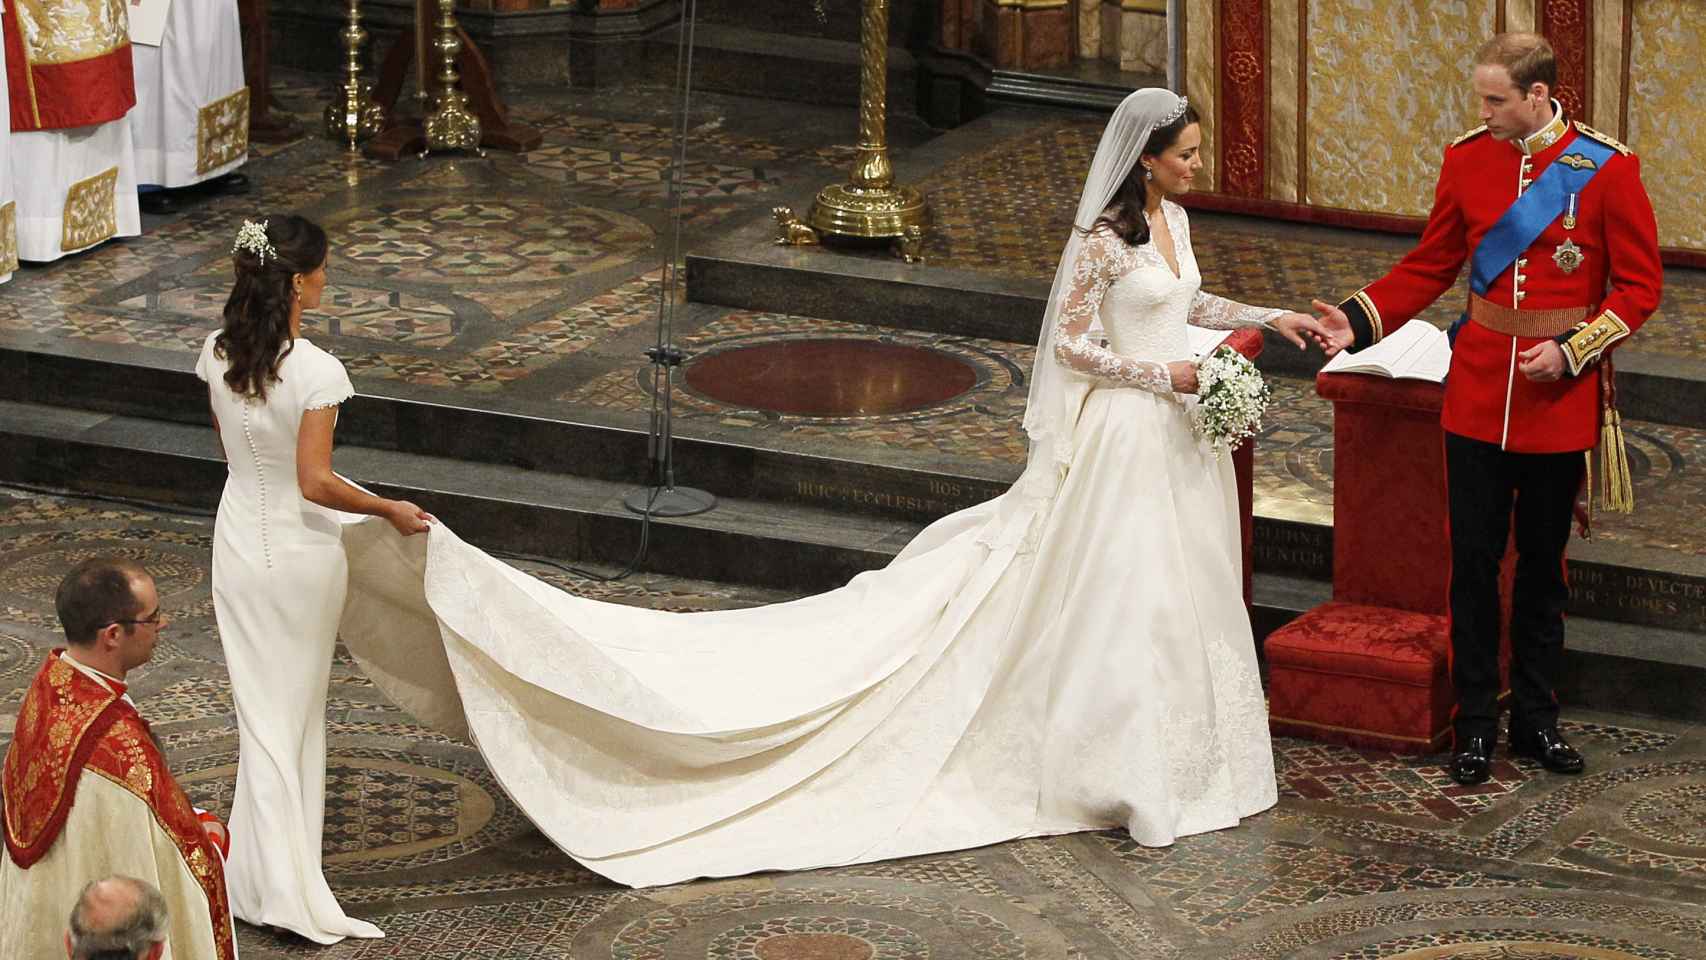 Nicola Peltz obtiene el cuarto lugar en el ranking de los mejores vestidos  de novia que lidera Kate Middleton